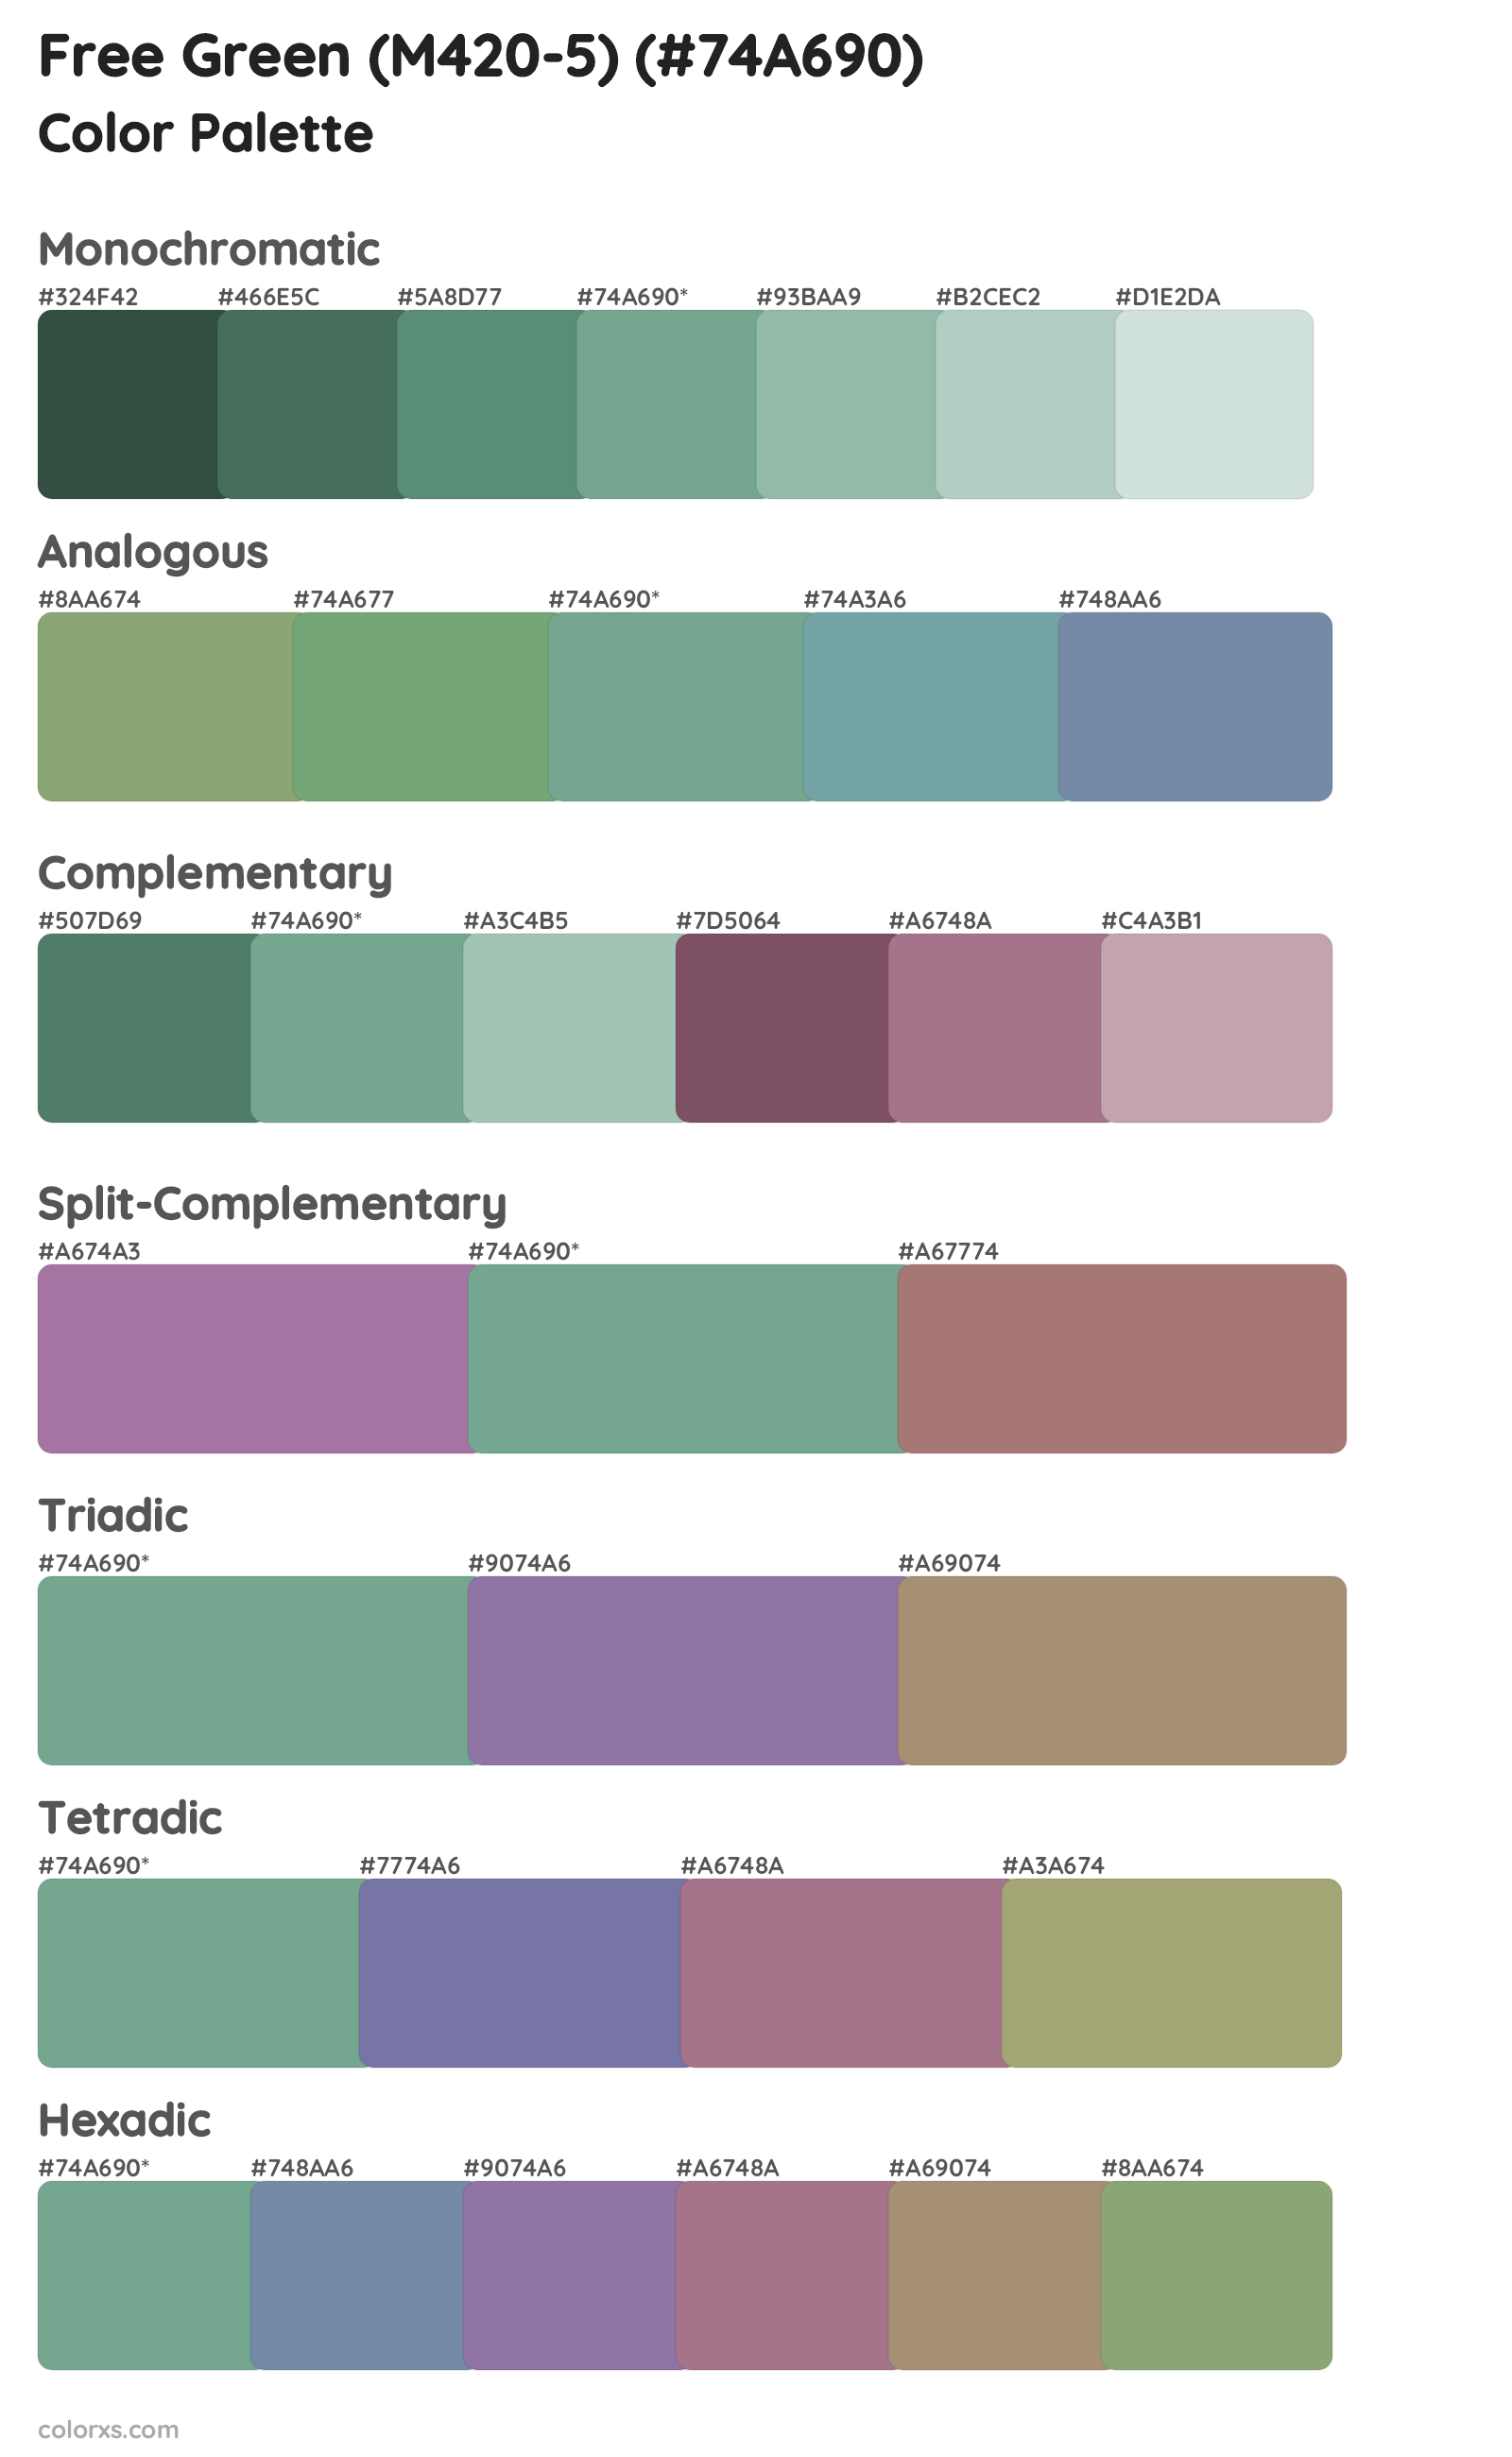 Free Green (M420-5) Color Scheme Palettes